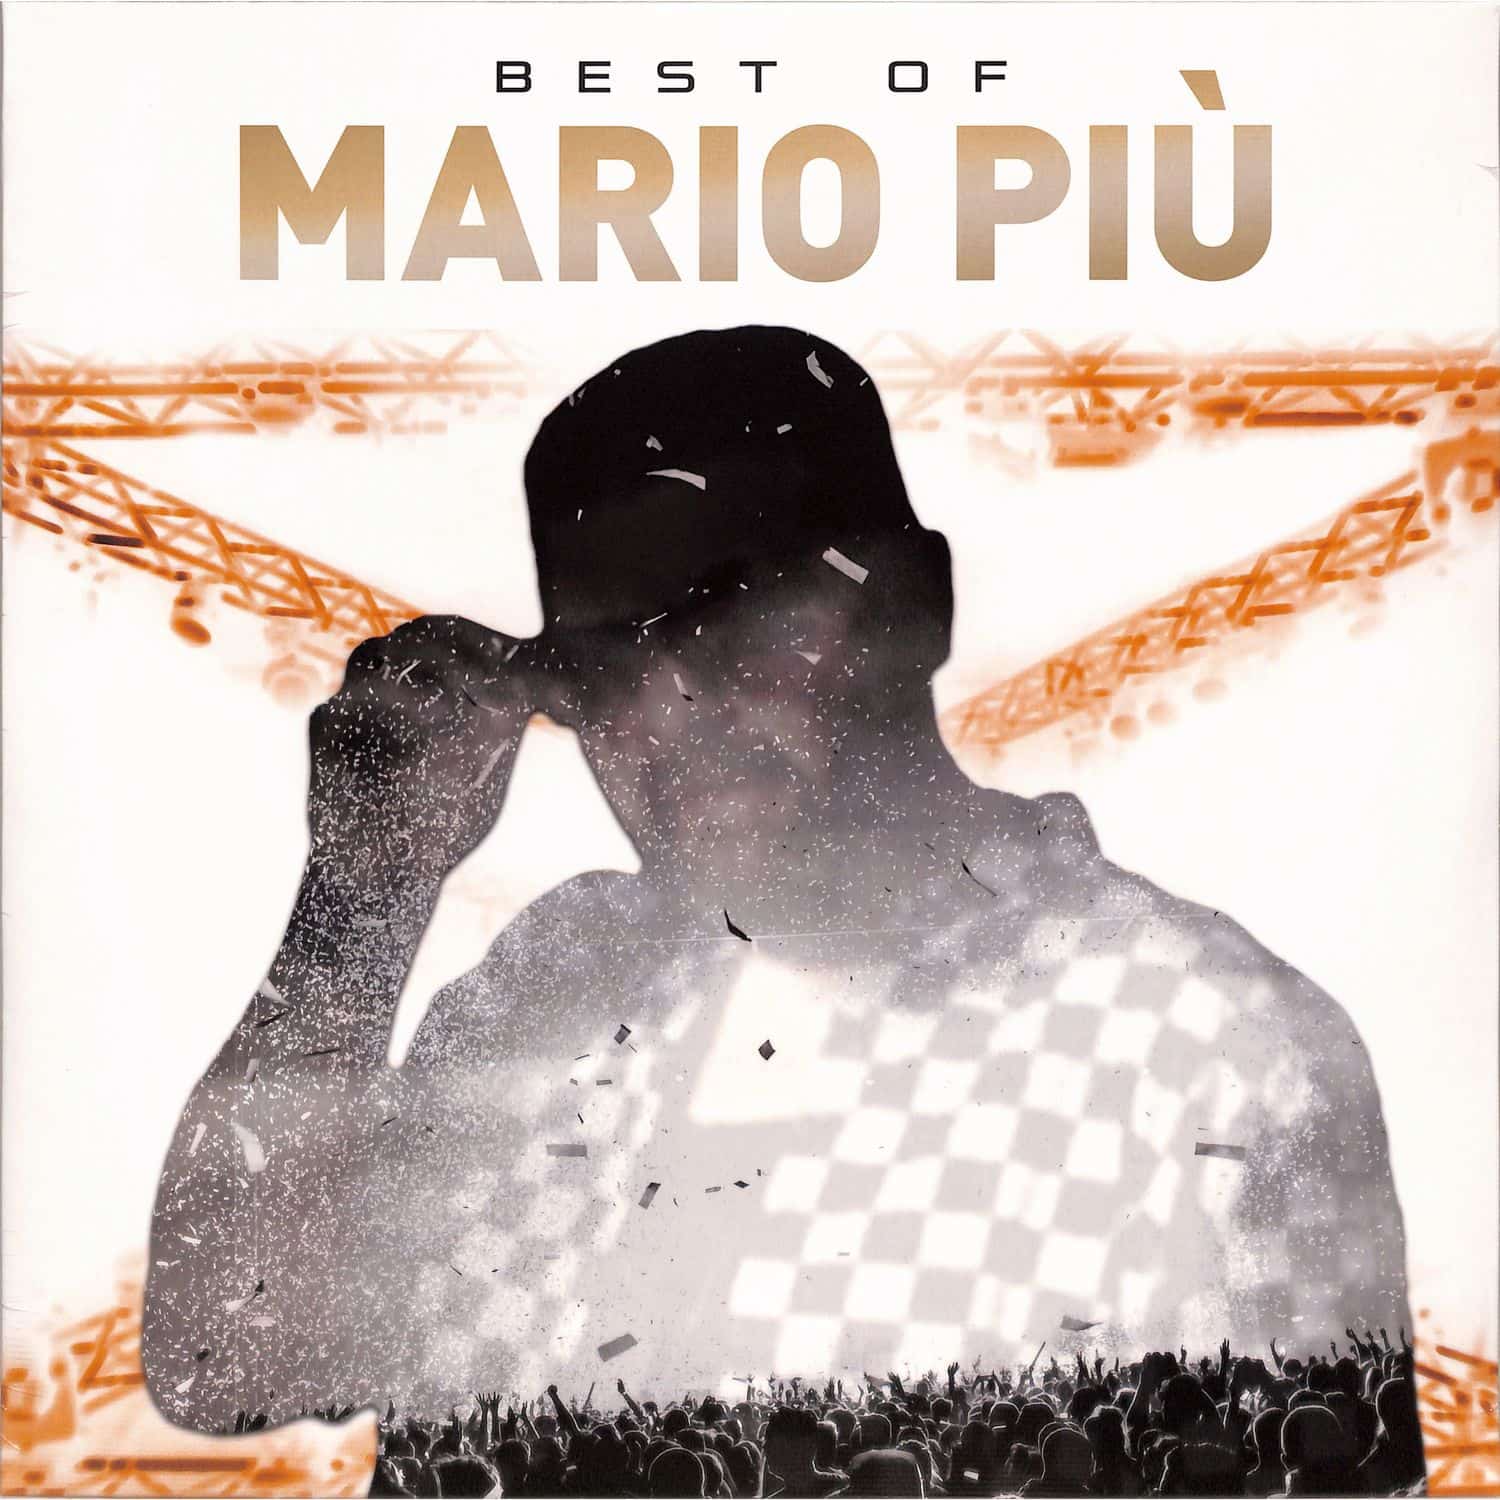 Mario Piu - BEST OF 